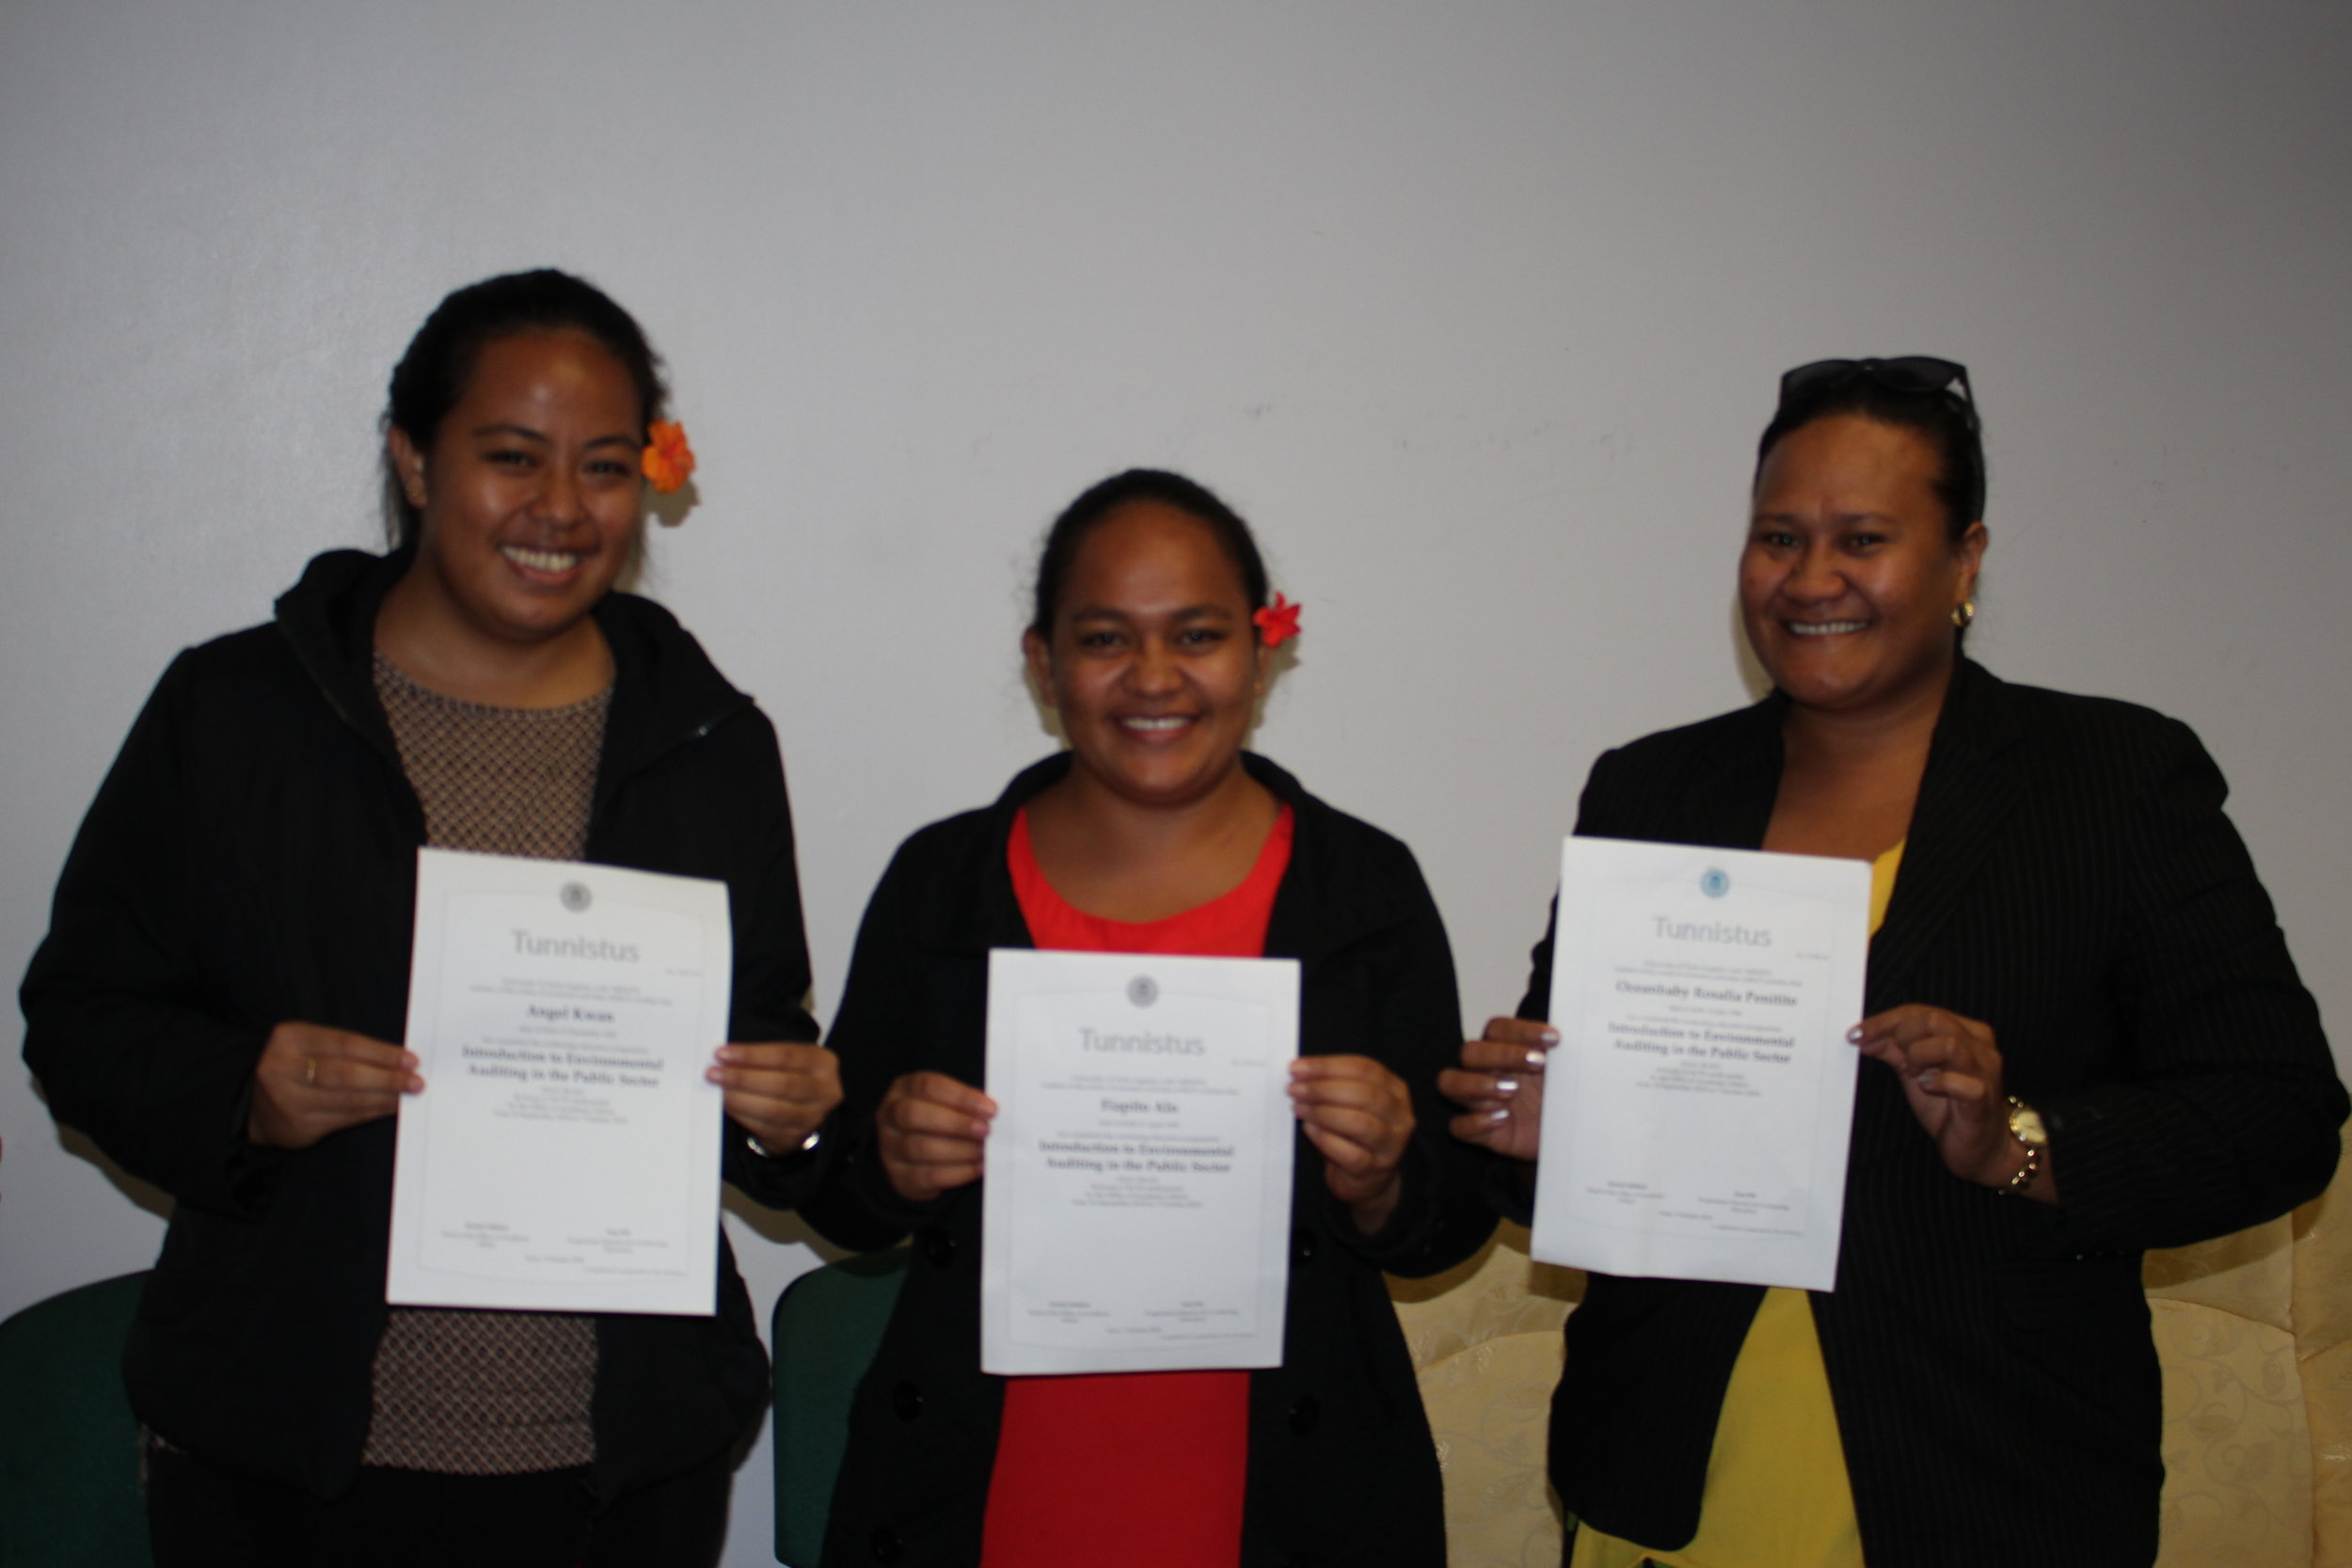 SAI Samoa's achievements in the MOOC